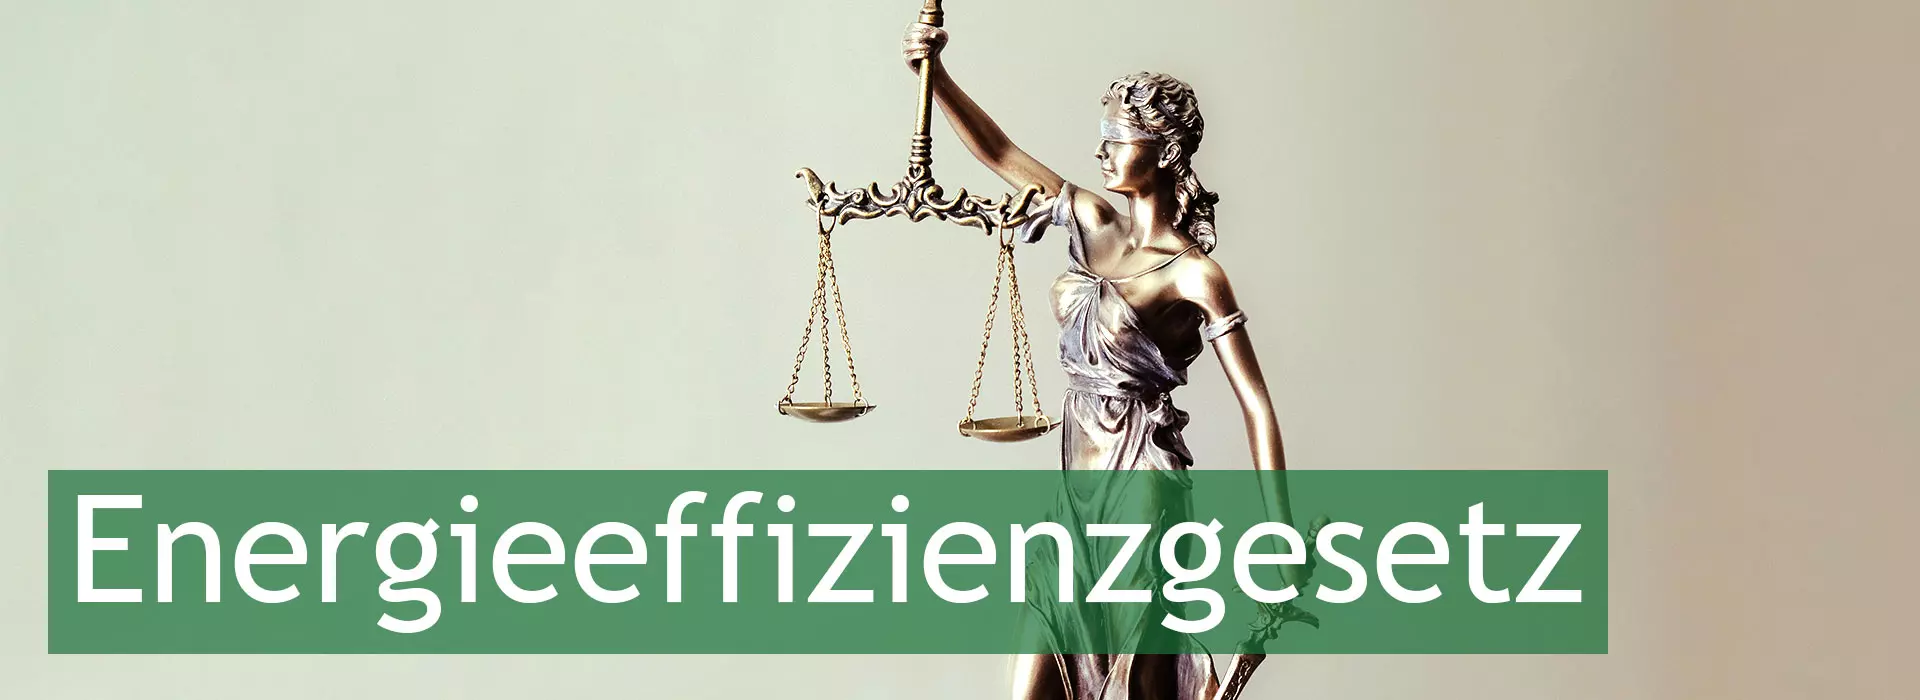 Energieeffizienzgesetz-Abbild einer Justitiafigur aus Bronze